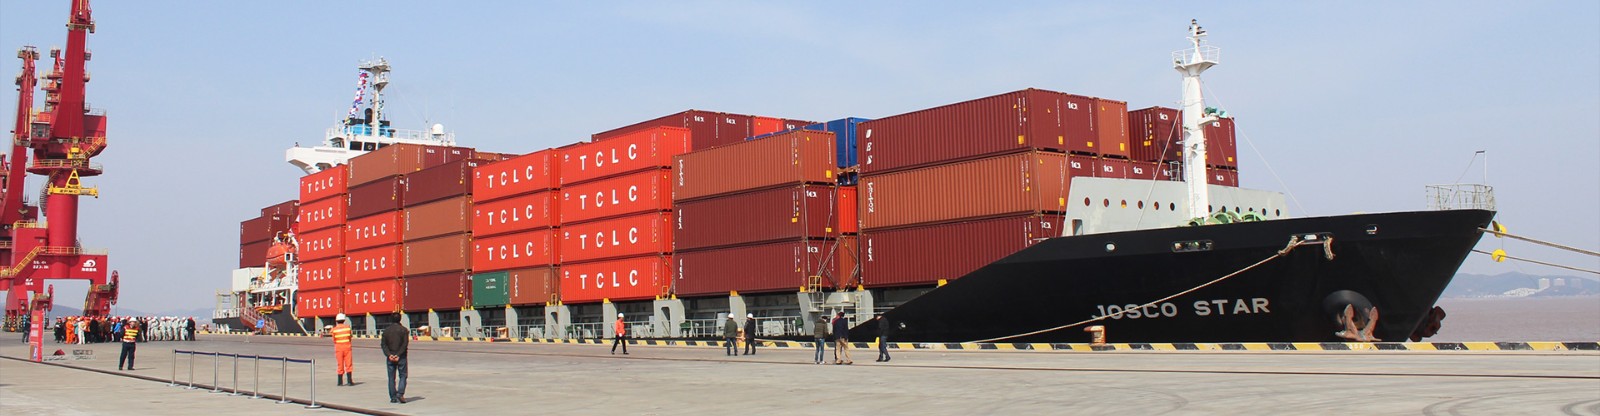 法国乔达国际货运代理有限公司,是第一家进驻中国的外资物流公司